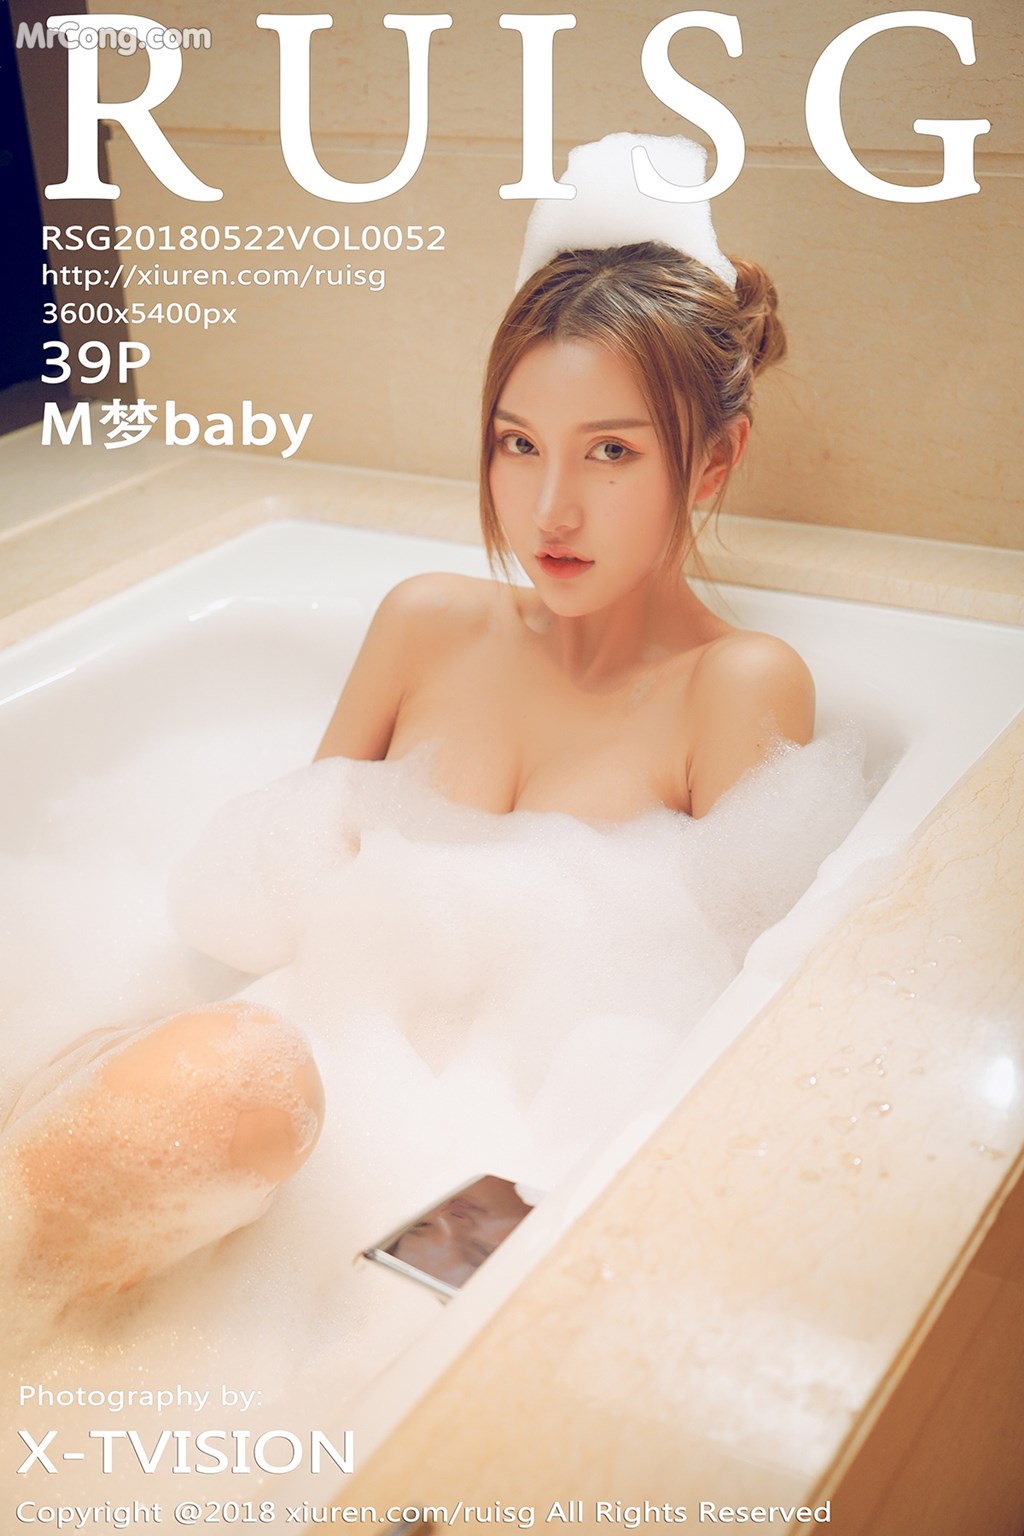 RuiSG Vol.052: Model M 梦 baby (40 photos) photo 1-0